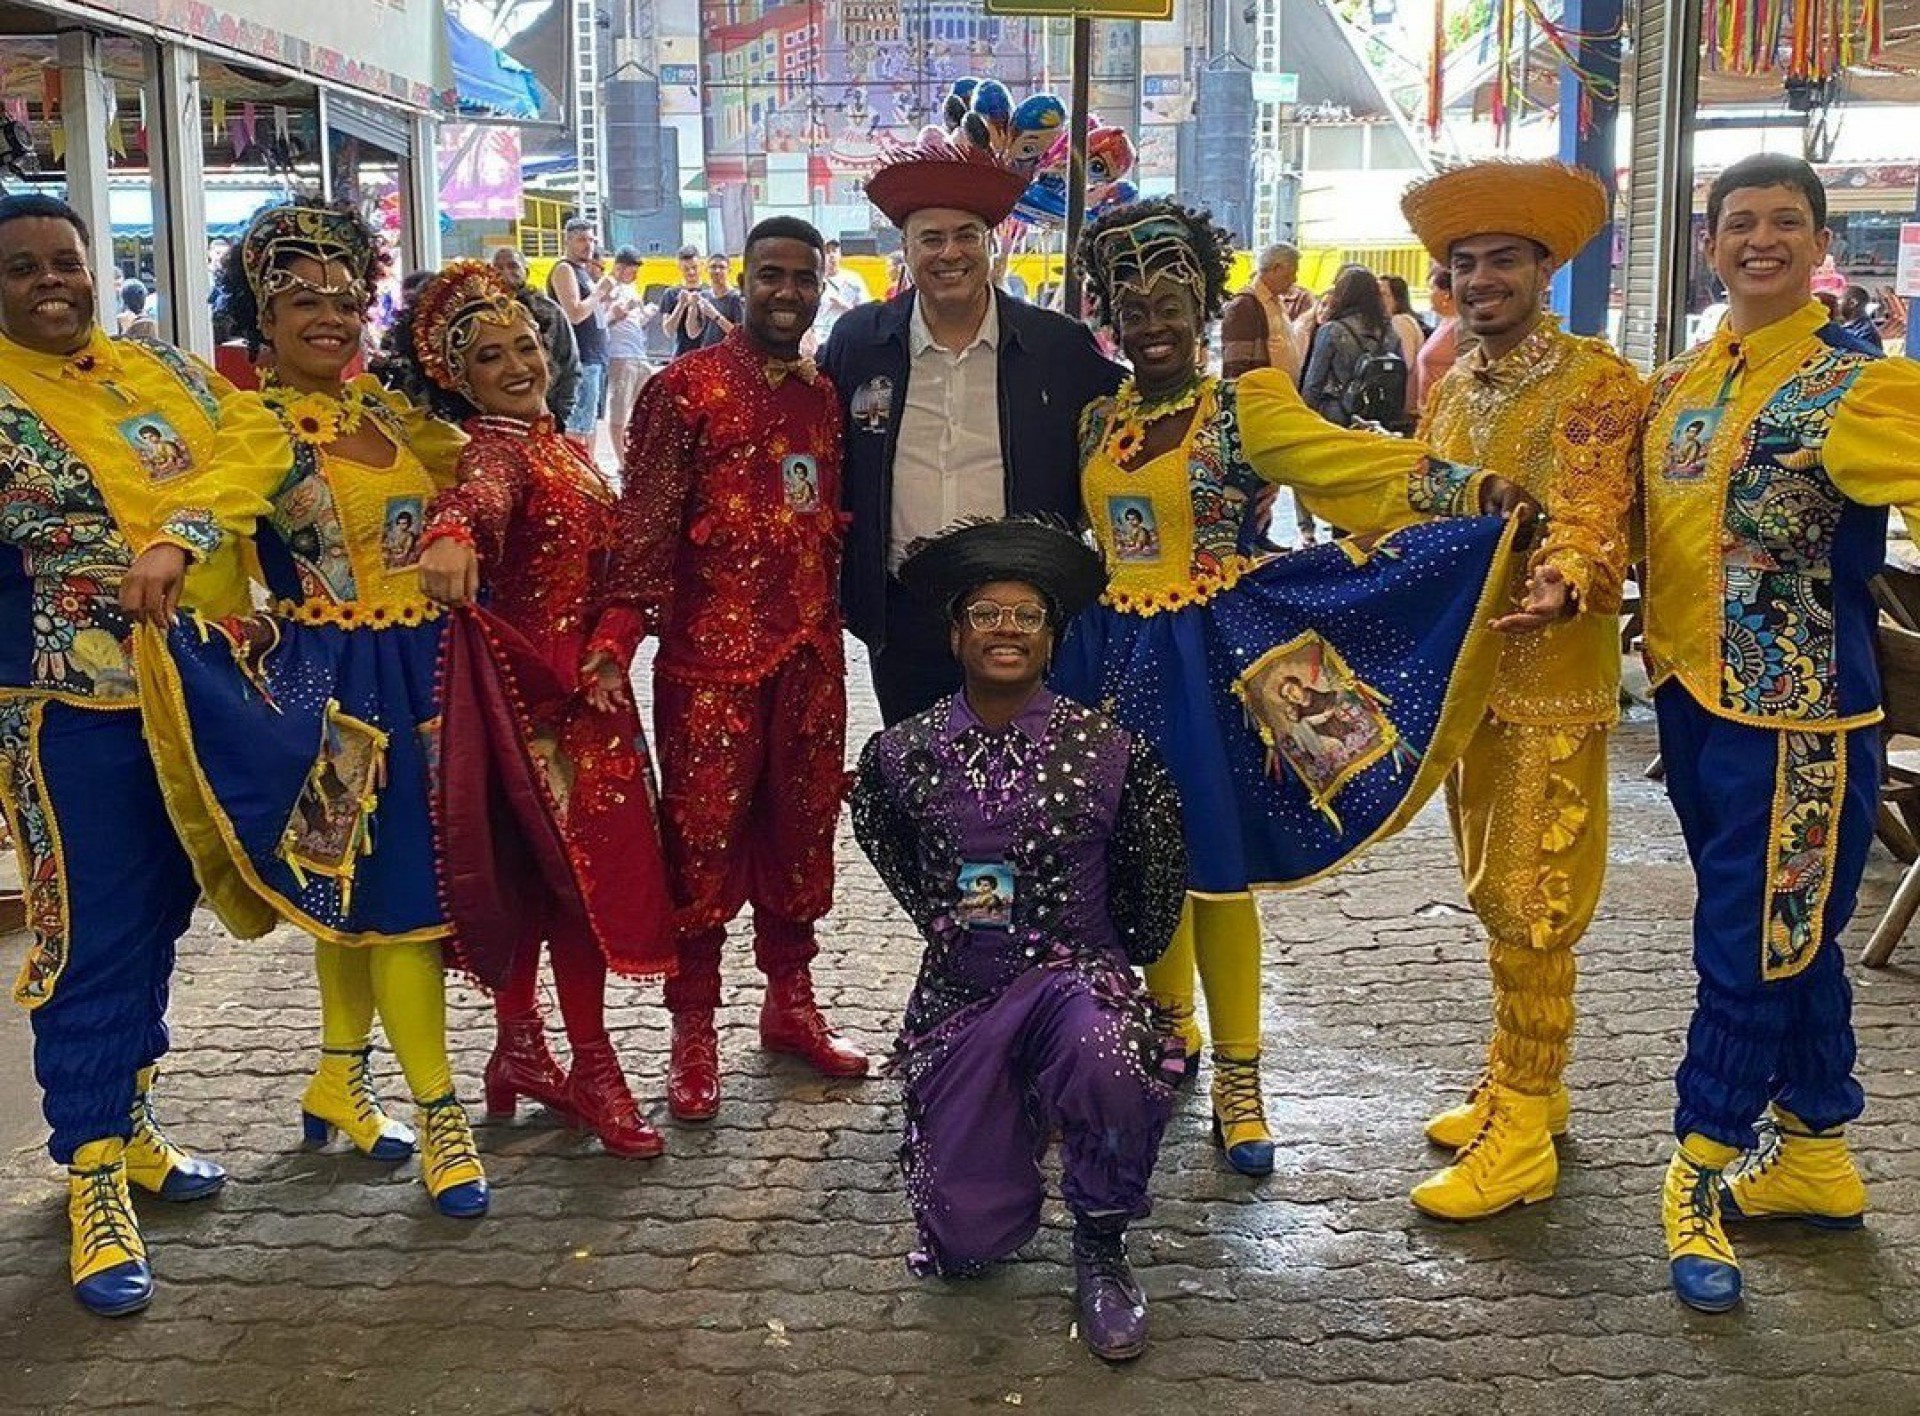 Wilson Witzel posa com grupo de artistas na Feira de São Cristóvão - Reprodução / Instagram